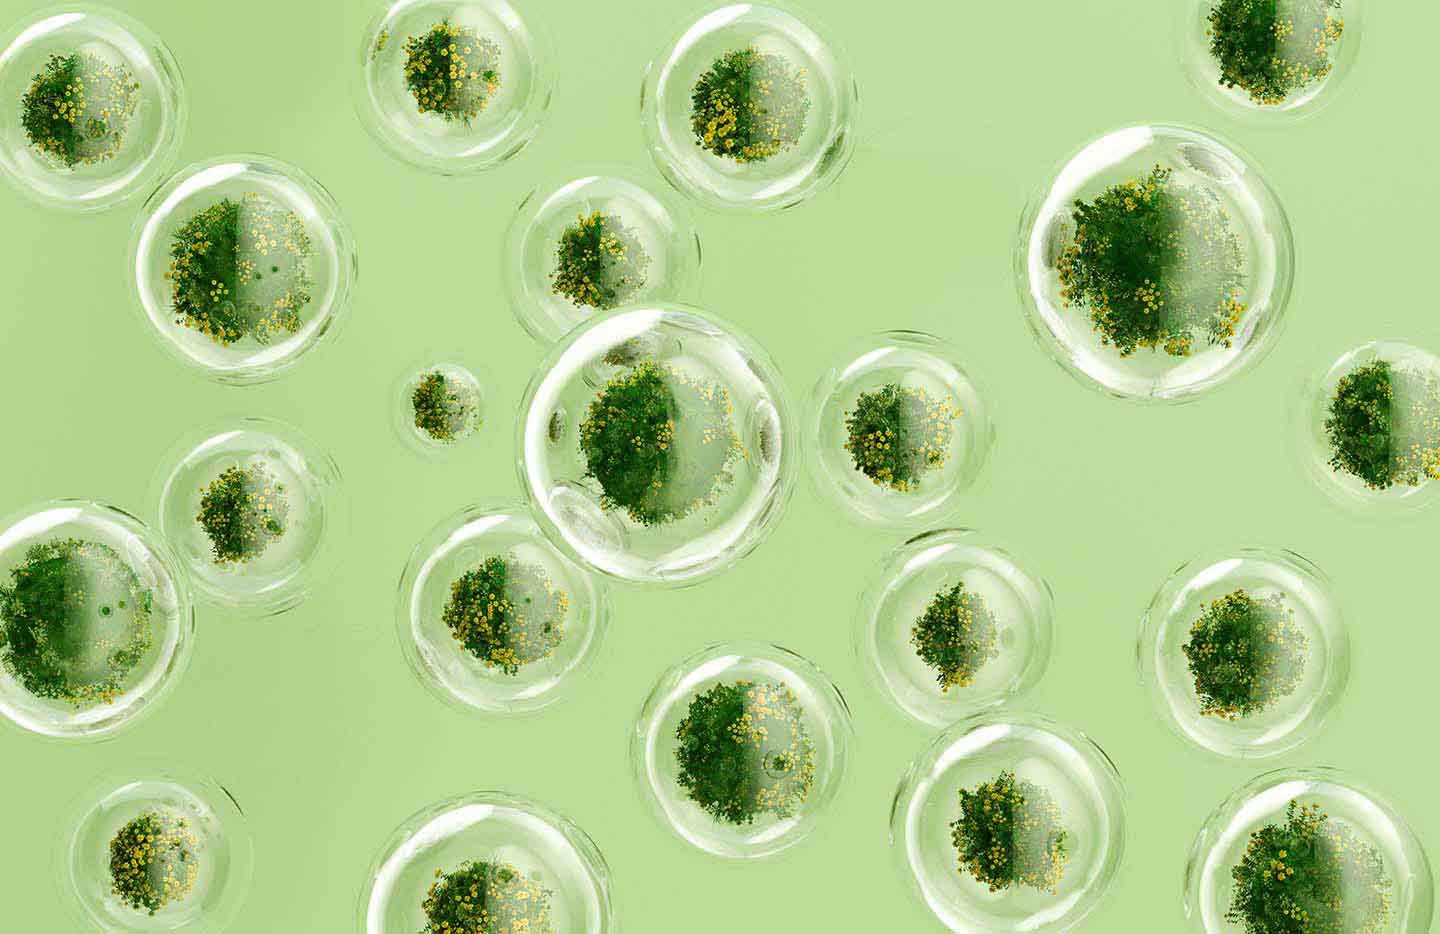 Plants growing in bubbles